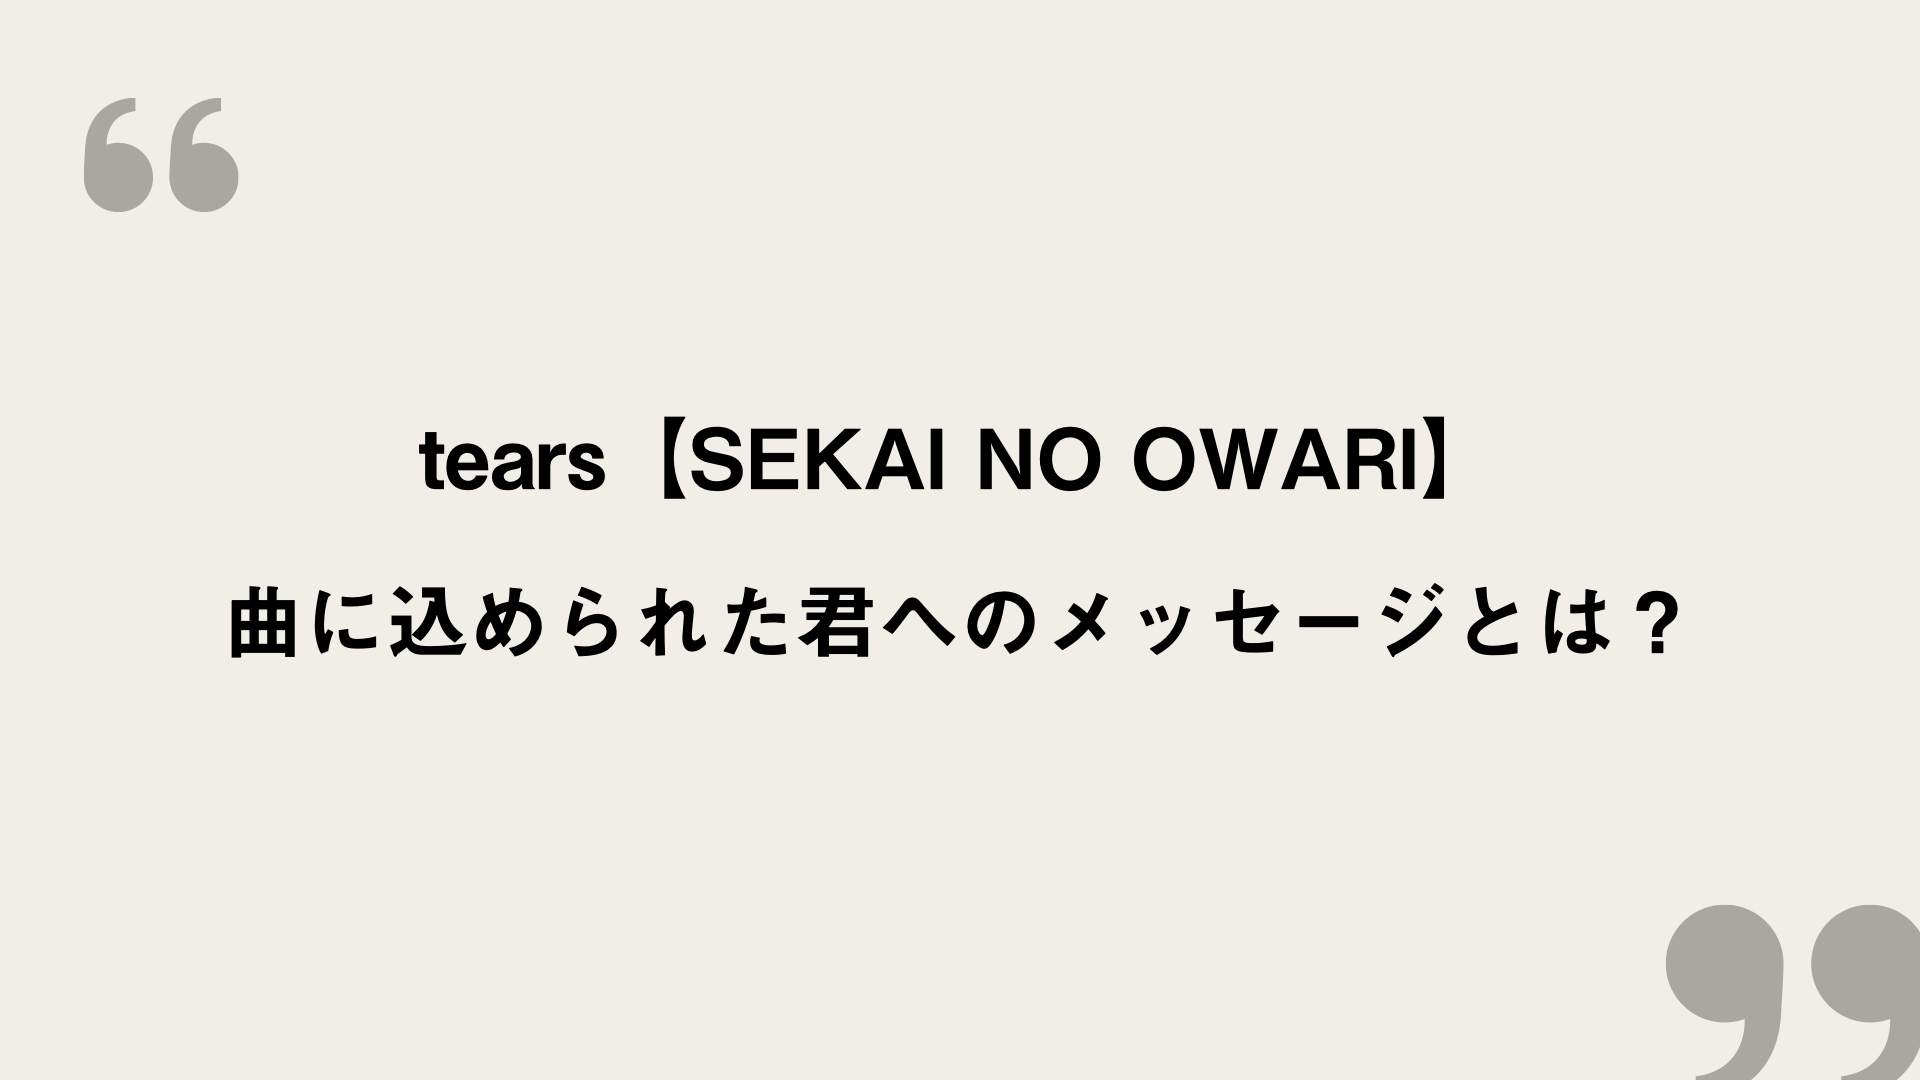 Tears Sekai No Owari 歌詞の意味を考察 曲に込められた君へのメッセージとは Framu Media